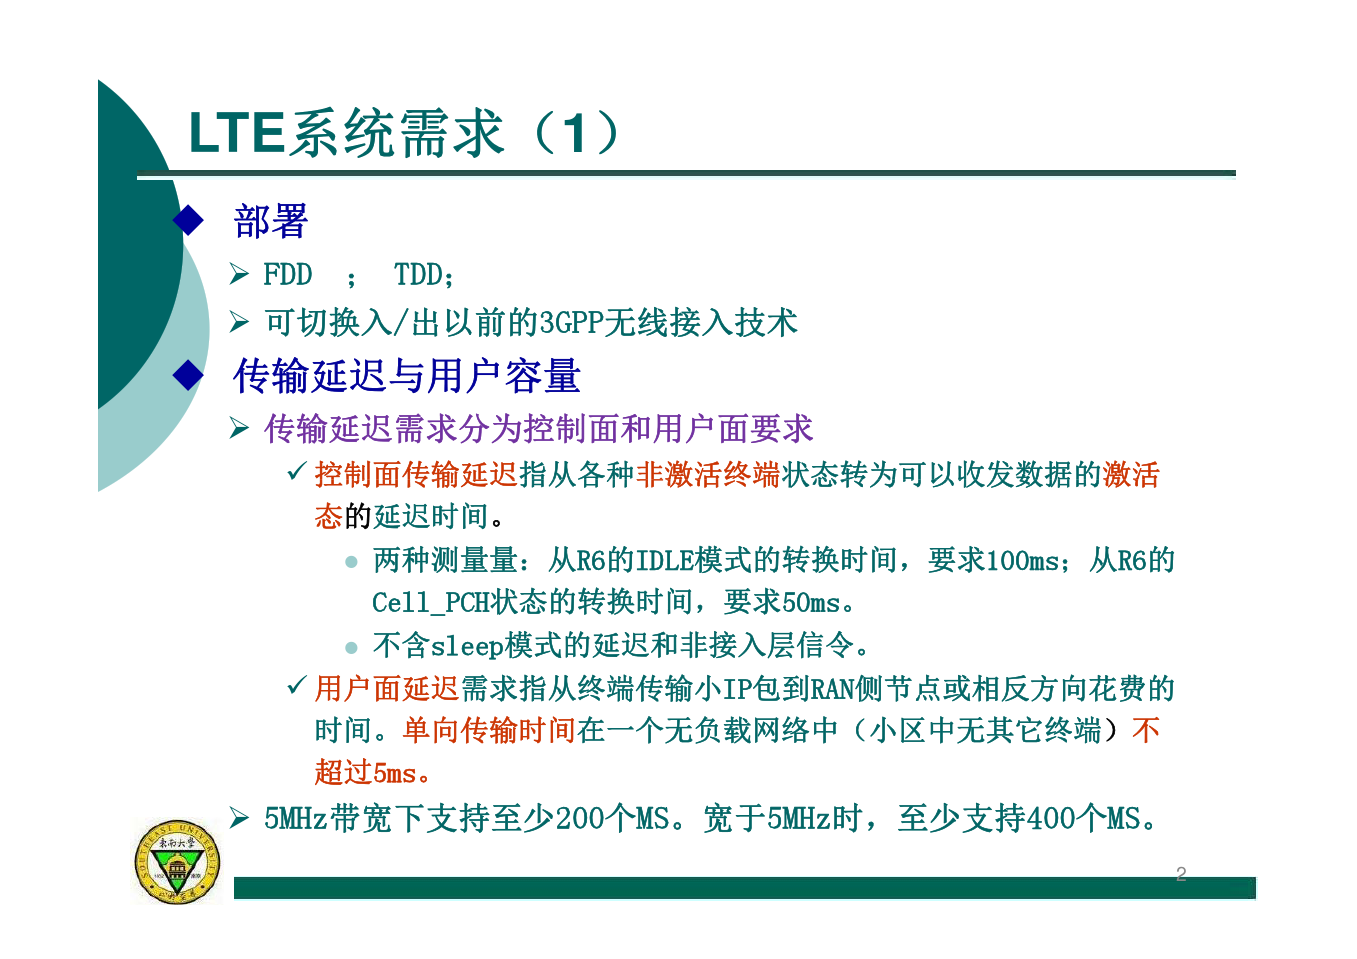 LTE技术简介v3-2